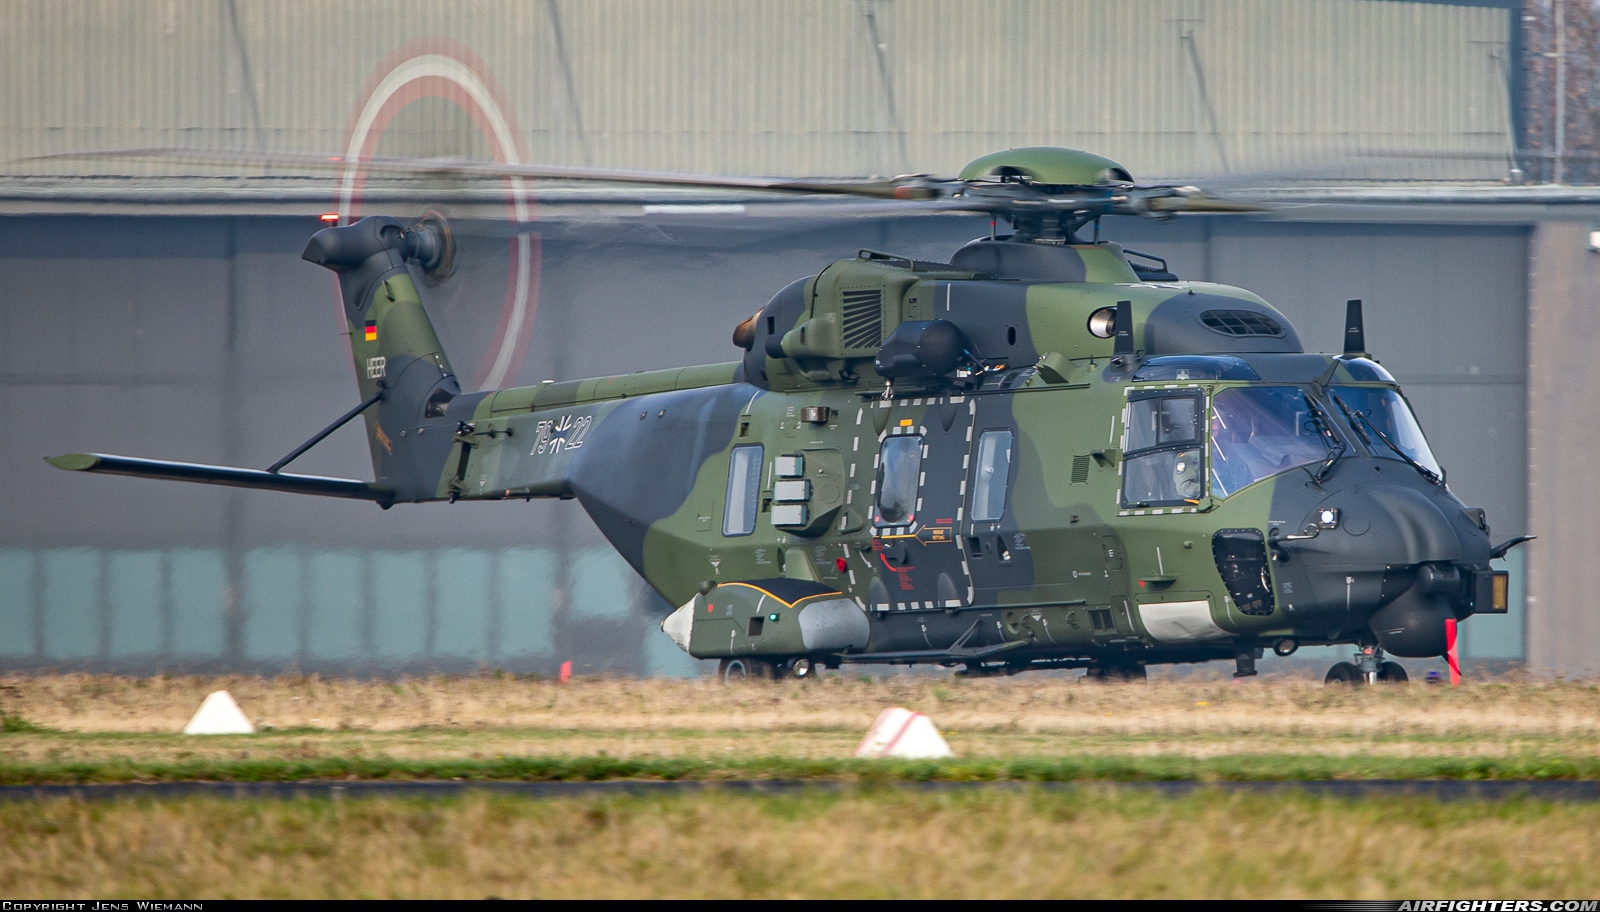 Germany - Army NHI NH-90TTH 79+22 at Buckeburg (- Achum) (ETHB), Germany